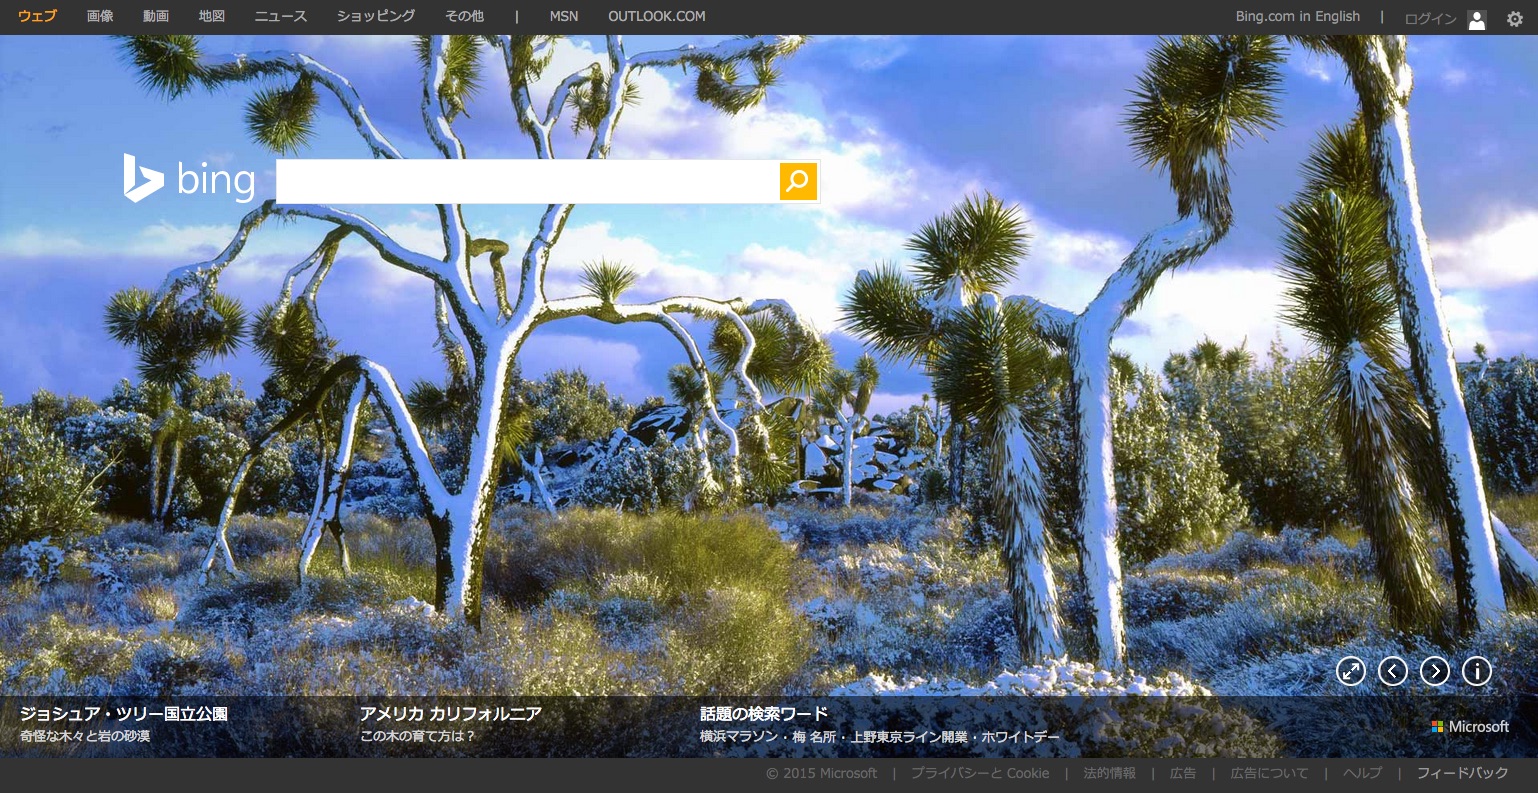 青い溶岩の カワ イジェン火山 など Bing 15 3 9 15 3 22 背景画像まとめ